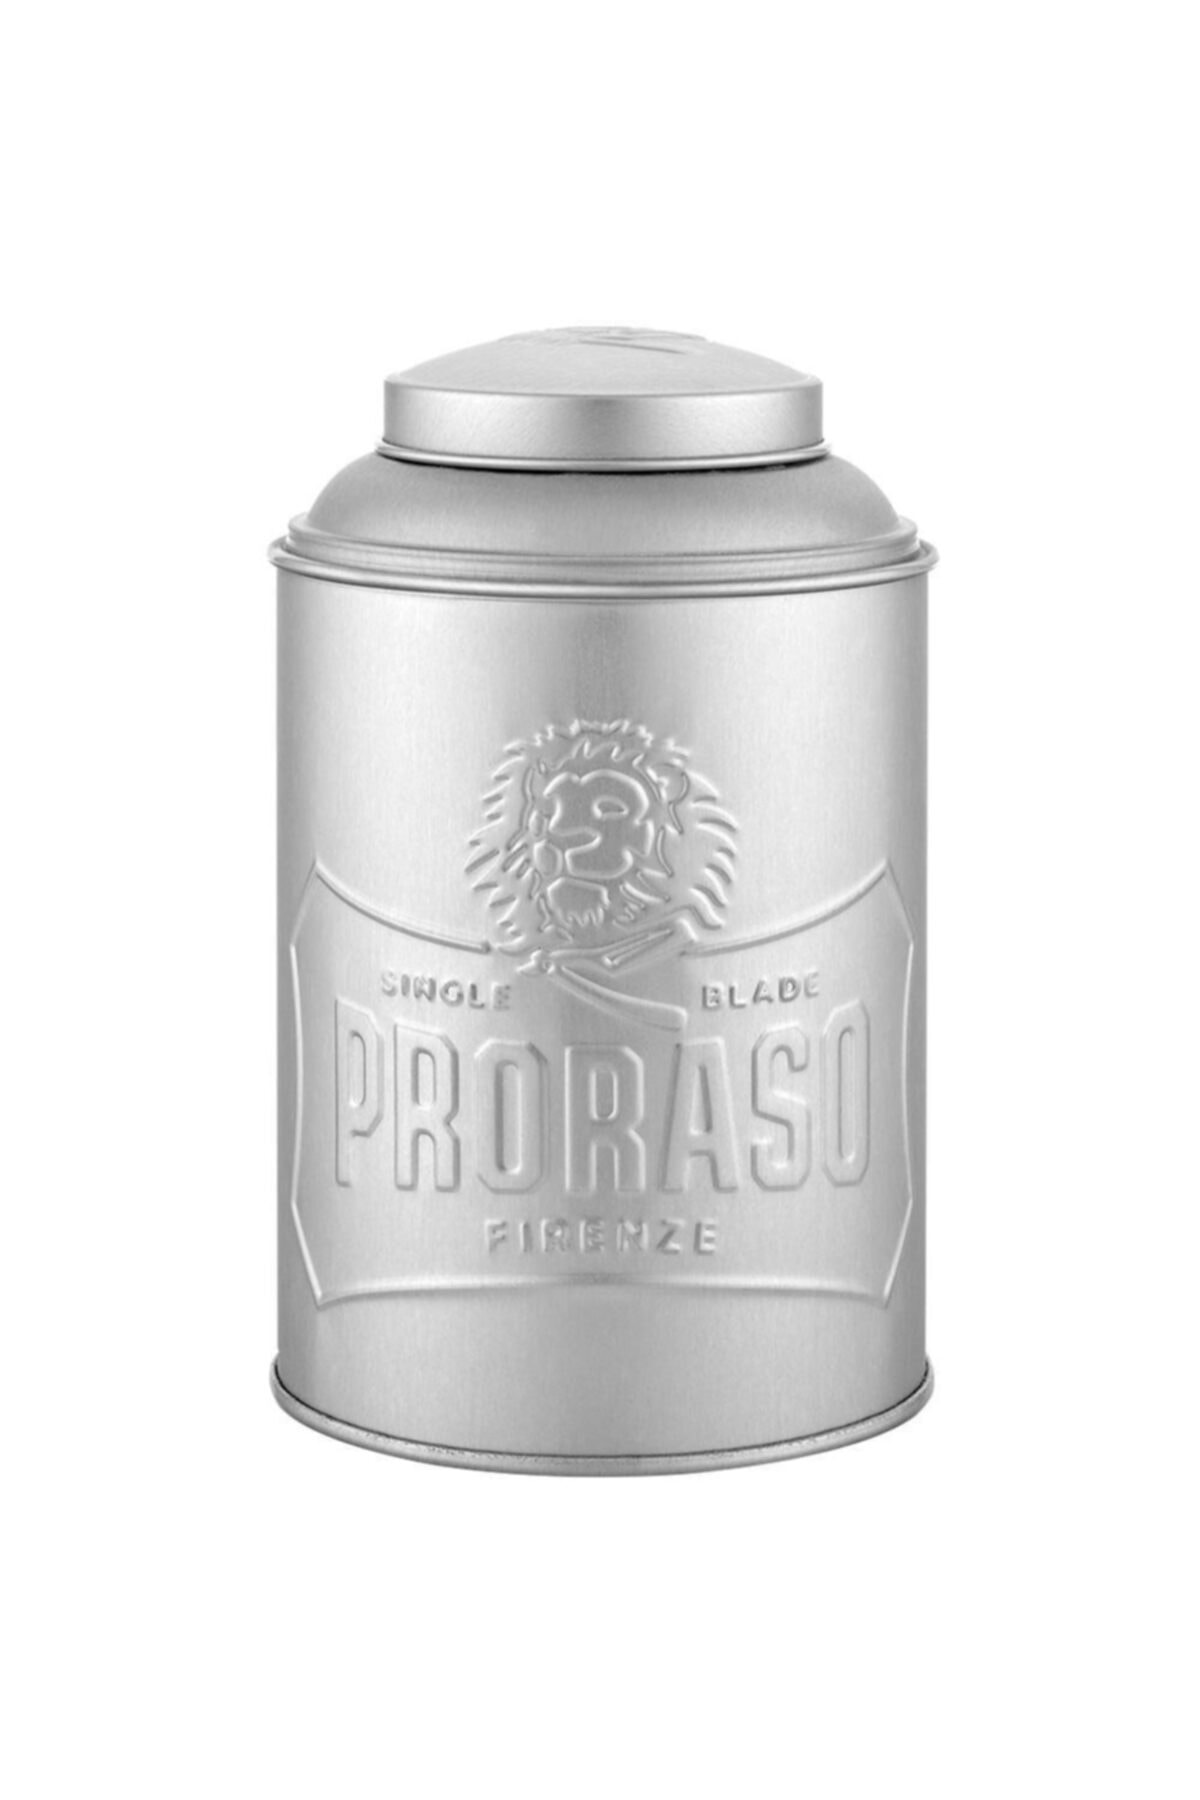 Proraso Metal Pudra Kutusu / Tin Box Powder-Talc